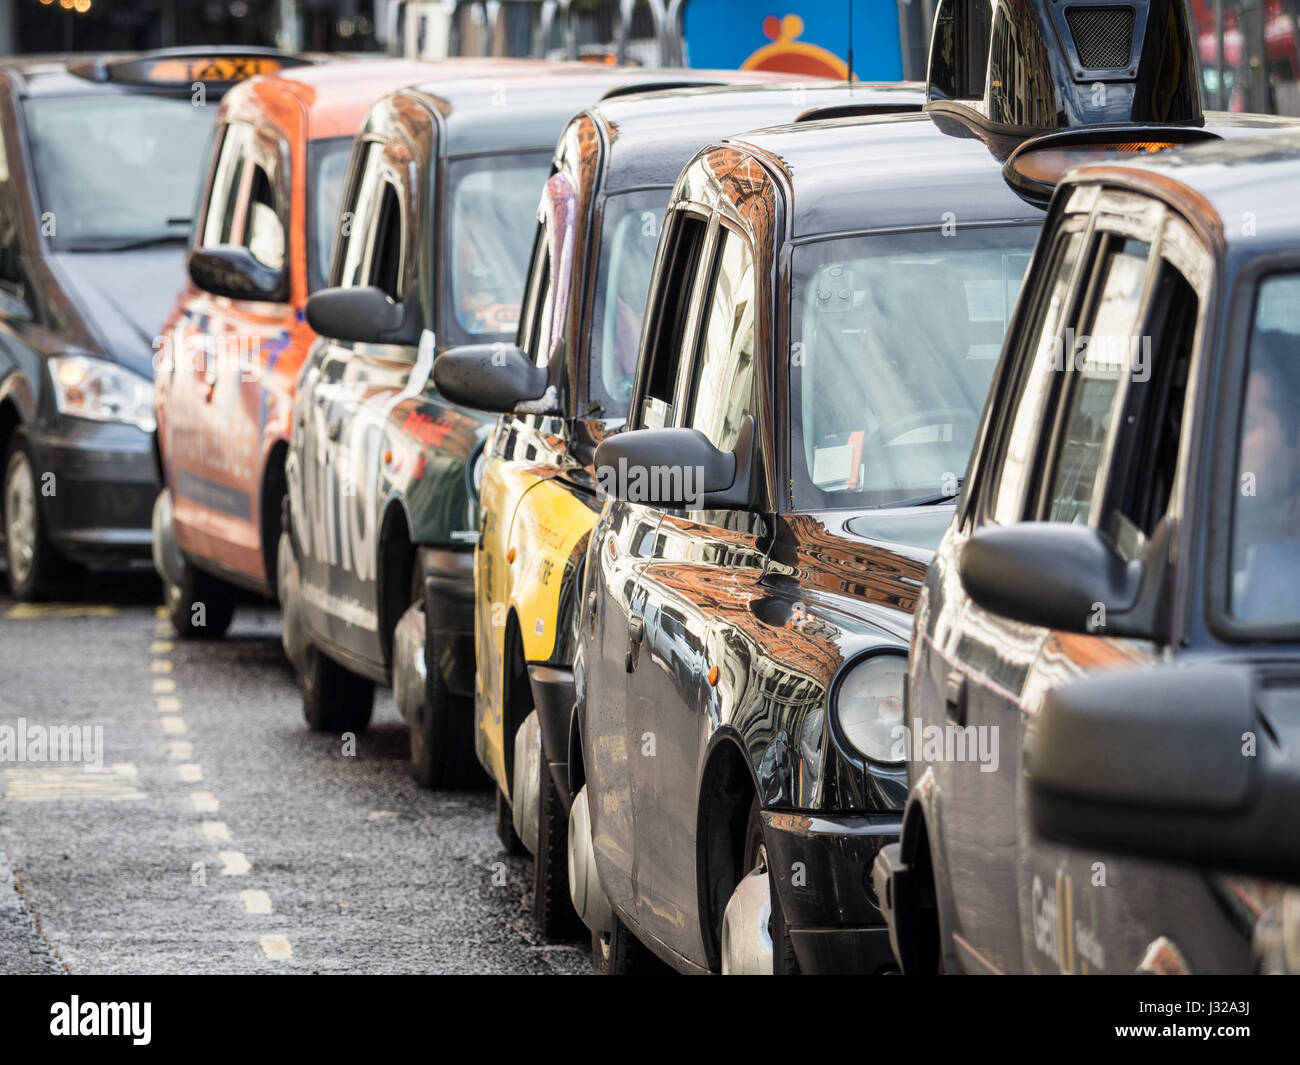 Londra taxi taxi neri in coda per i clienti vicino alla stazione di Liverpool Street nel centro di Londra. Foto Stock